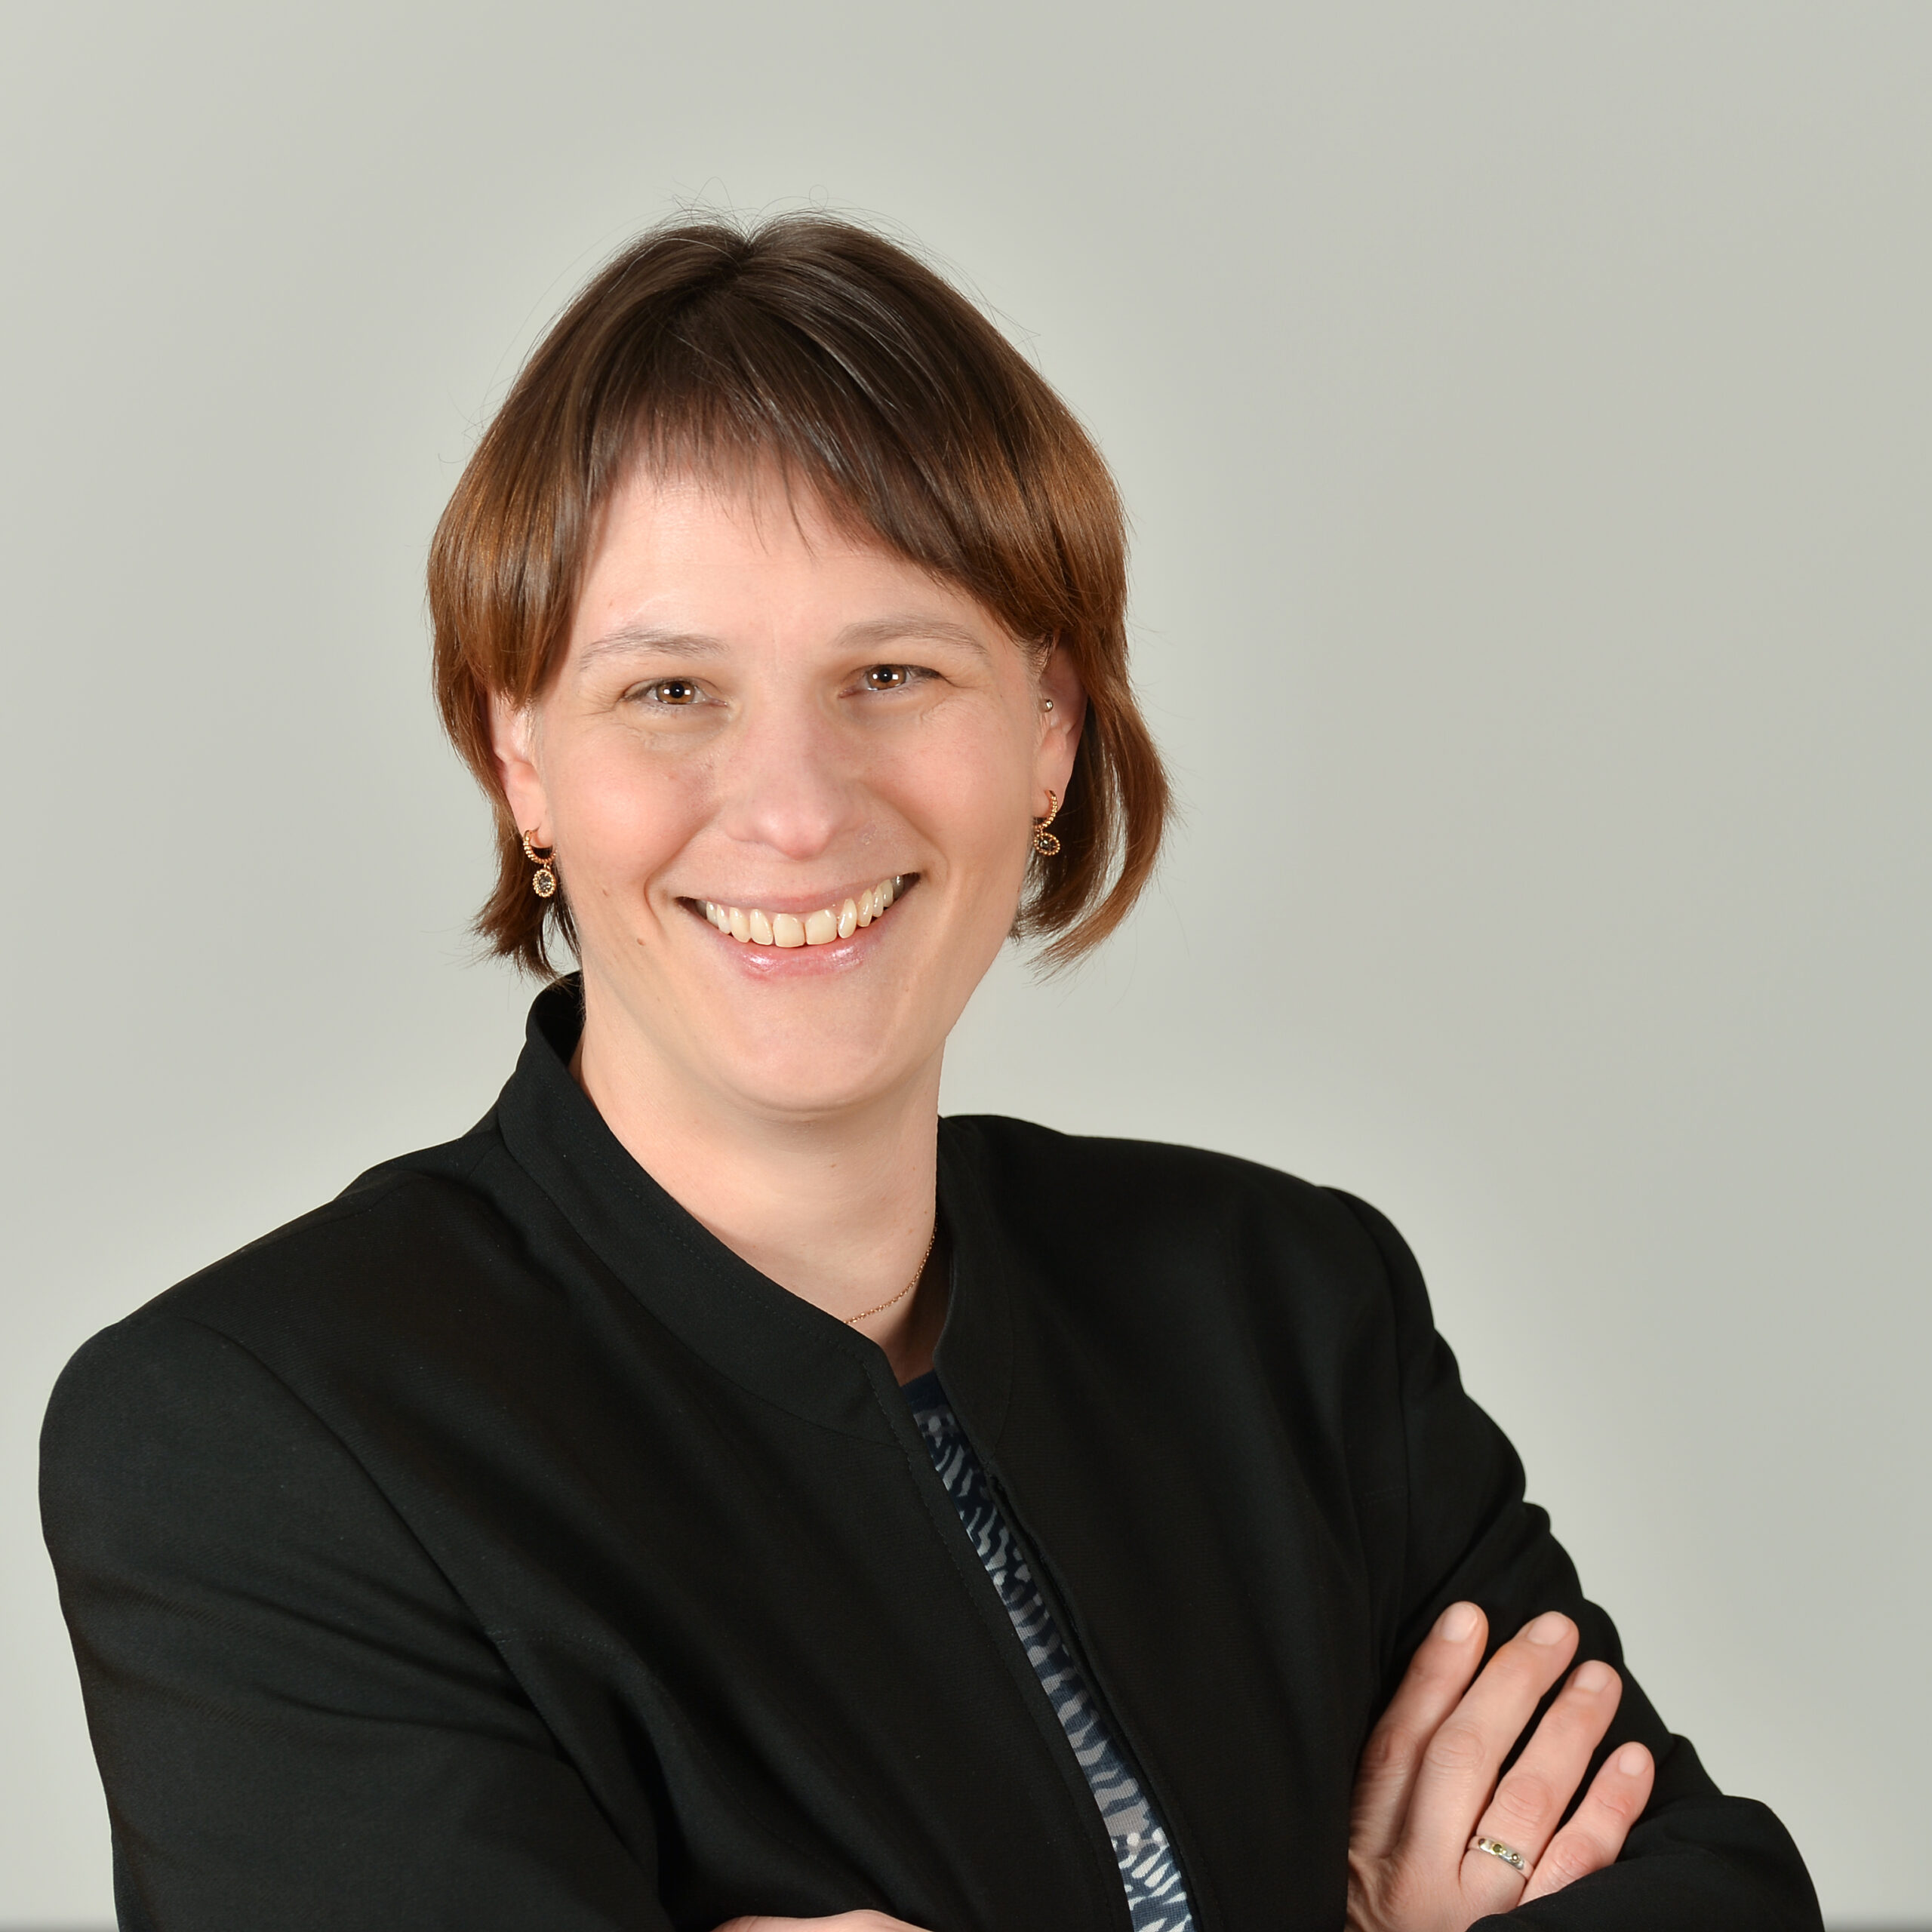 Profilbild von Ulrike Moser in einem schwarzen Blazer.